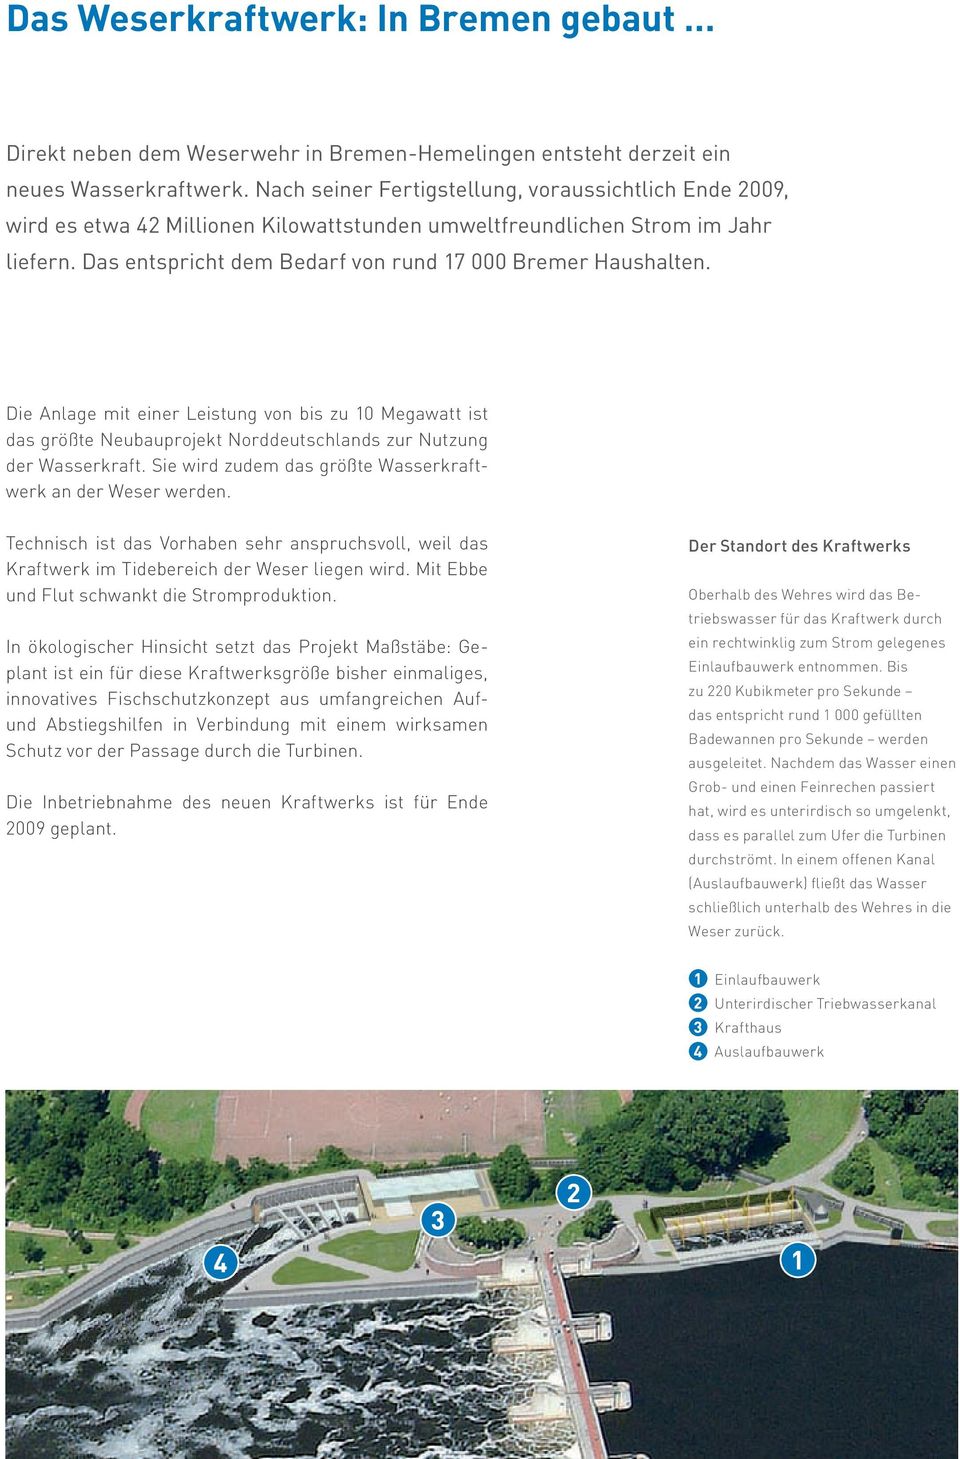 Die Anlage mit einer Leistung von bis zu 10 Megawatt ist das größte Neubauprojekt Norddeutschlands zur Nutzung der Wasserkraft. Sie wird zudem das größte Wasserkraftwerk an der Weser werden.